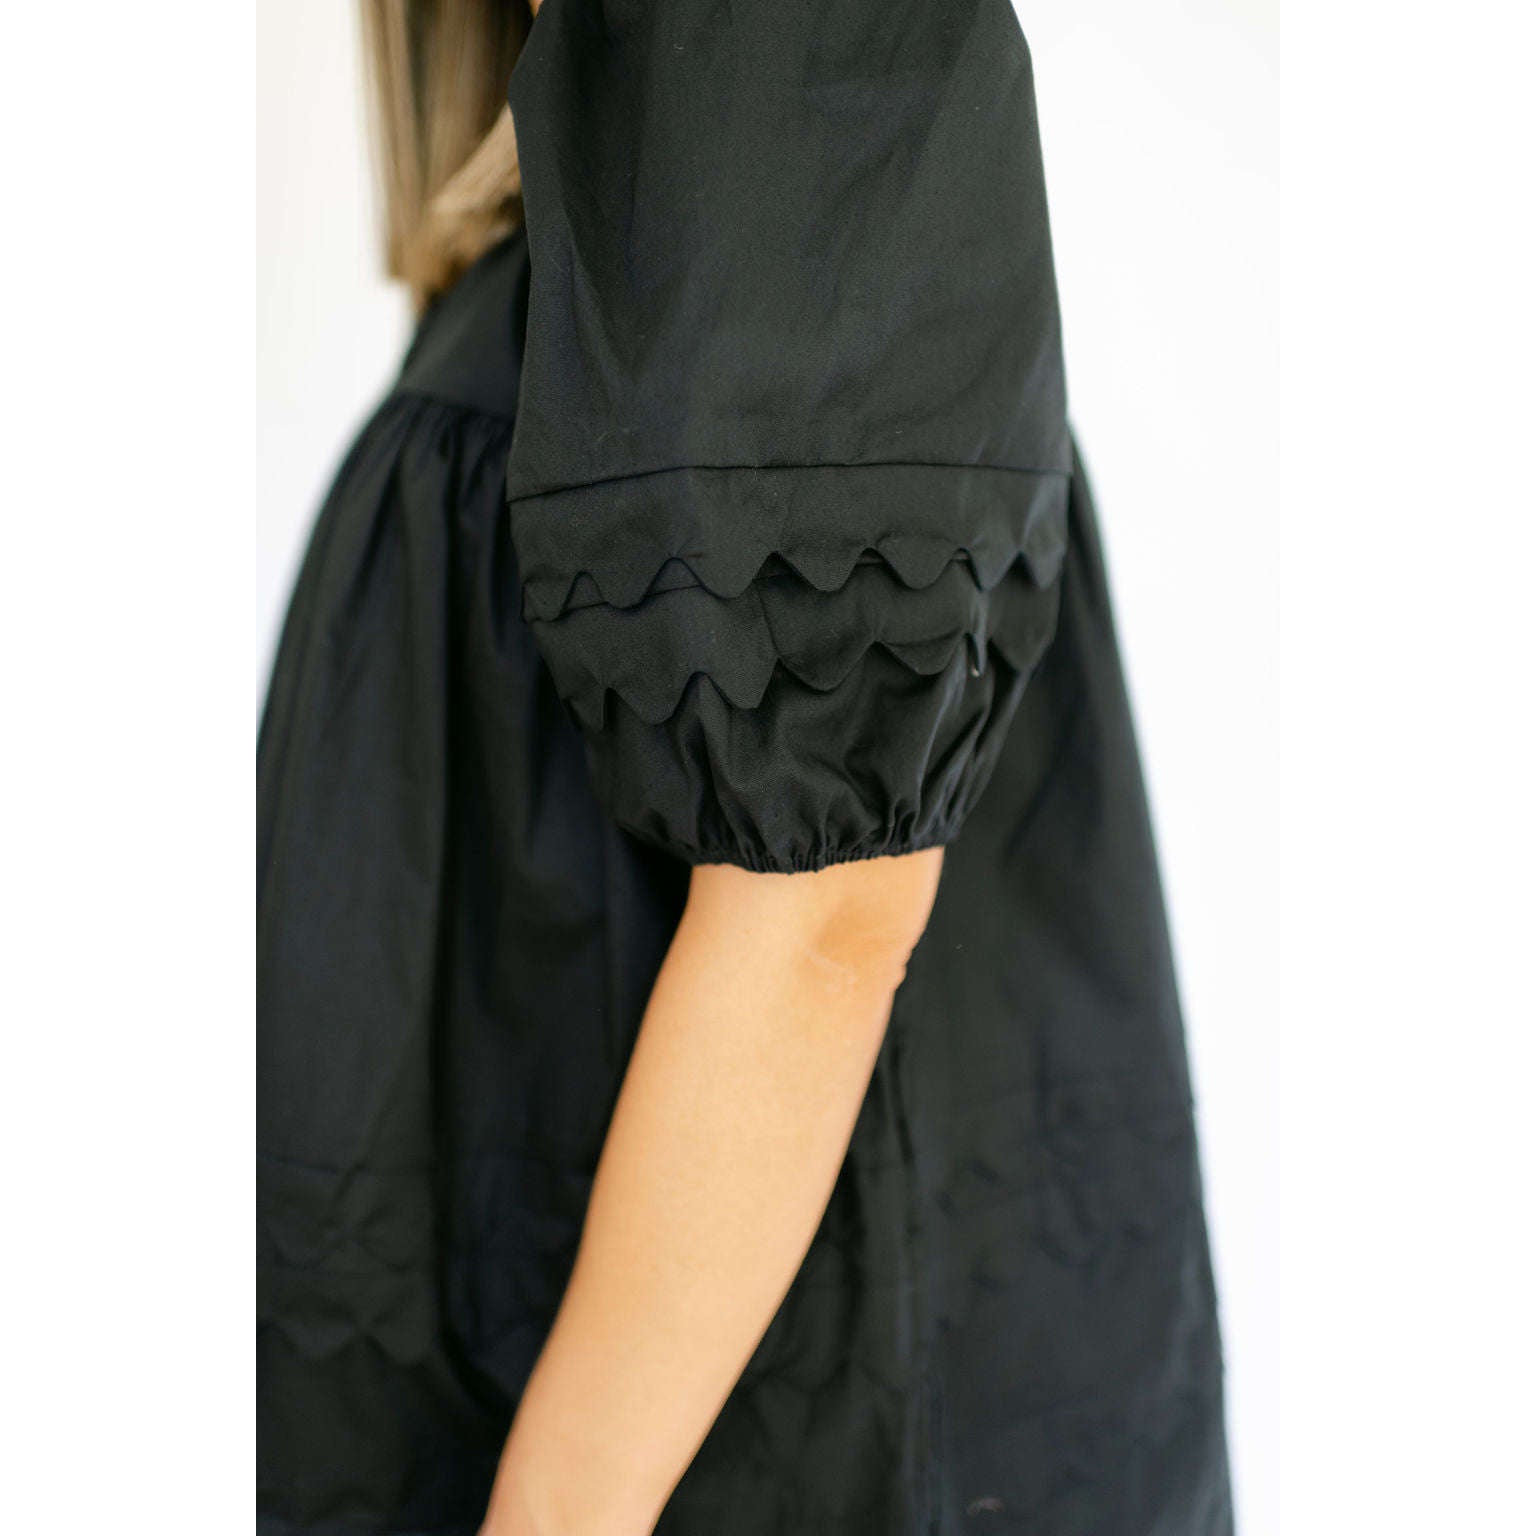 8.28 Boutique:Karlie Clothes,Karlie Clothes Short Sleeve Scalloped V-Neck Dress in Black,Dress